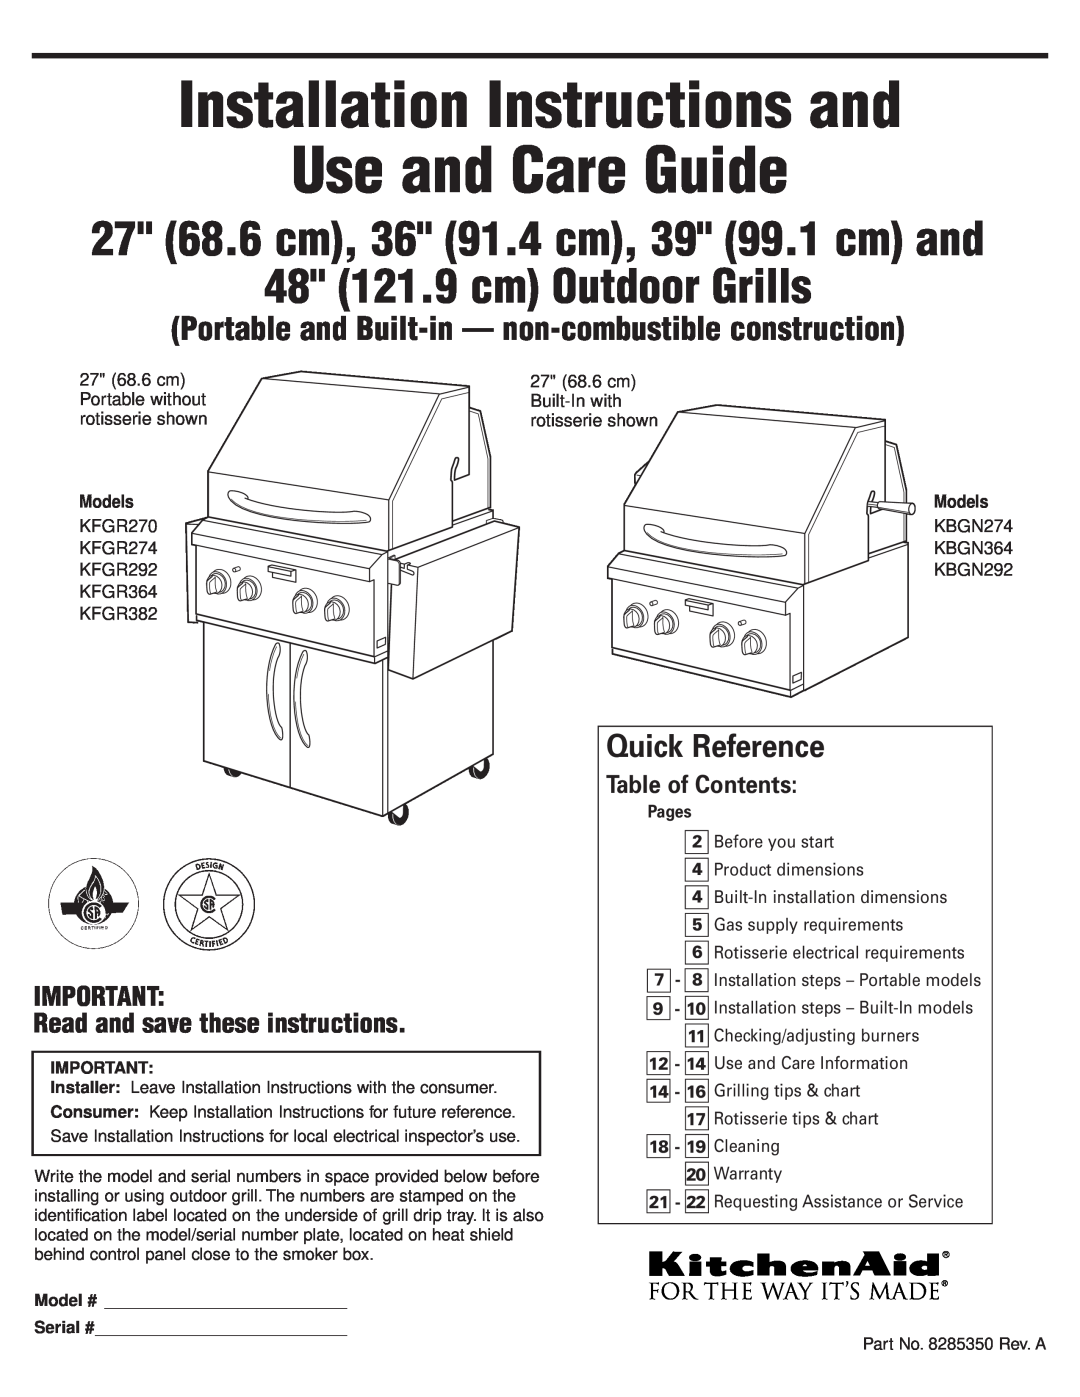 KitchenAid KFGR274 installation instructions Installation Instructions and Use and Care Guide, 48 121.9 cm Outdoor Grills 